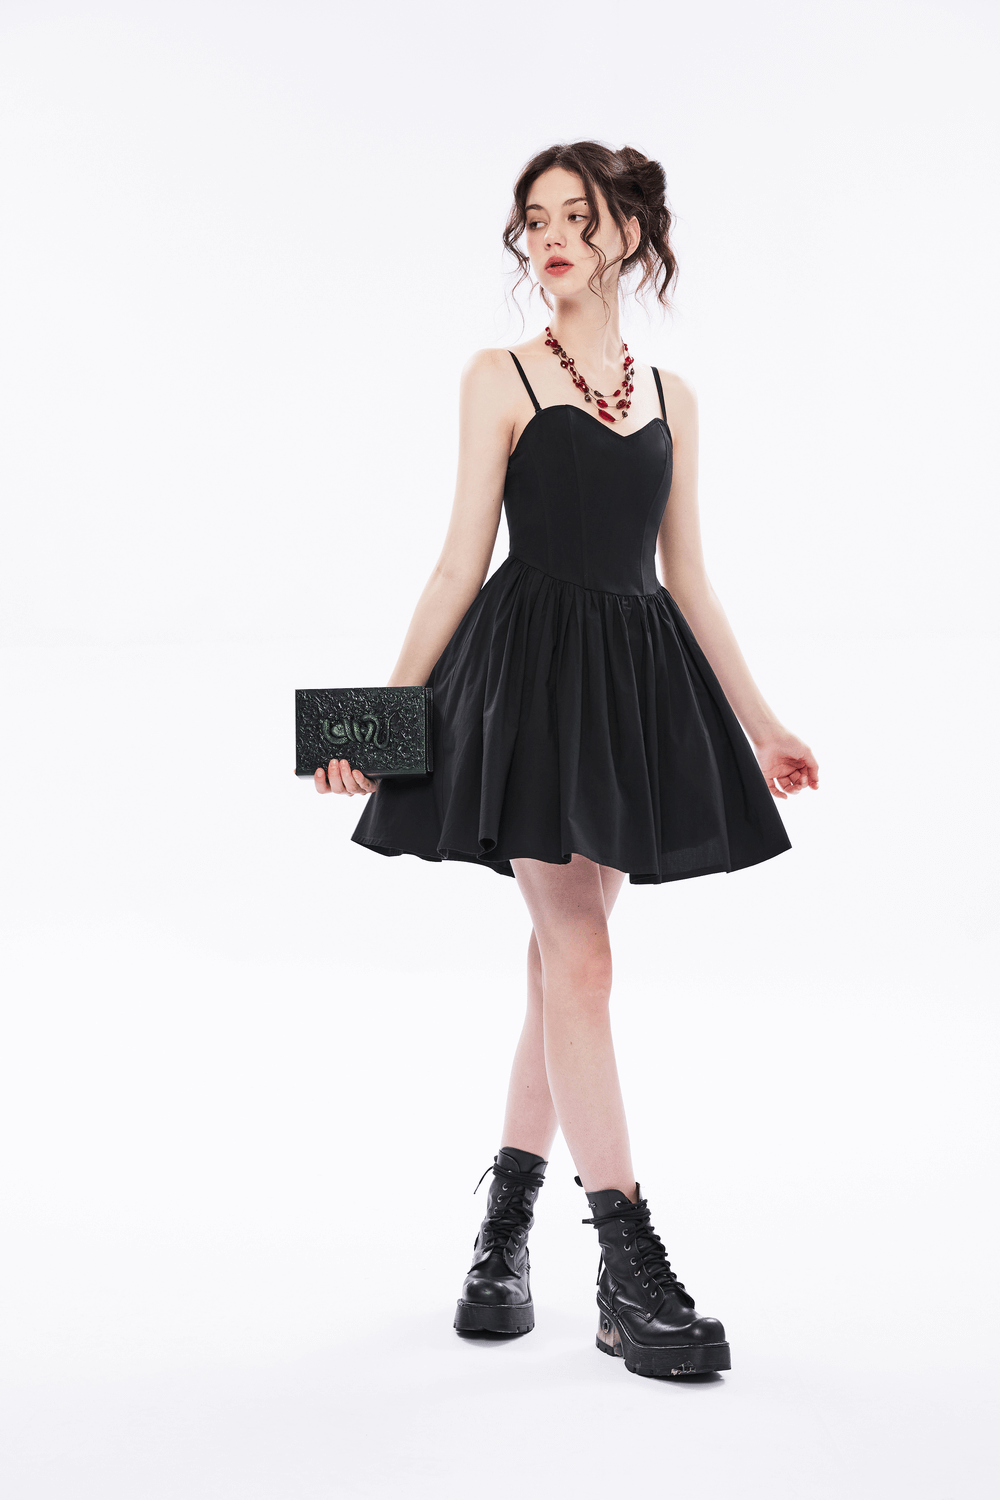 Elegant Black A-Line Skater Dress with Plaid Interior